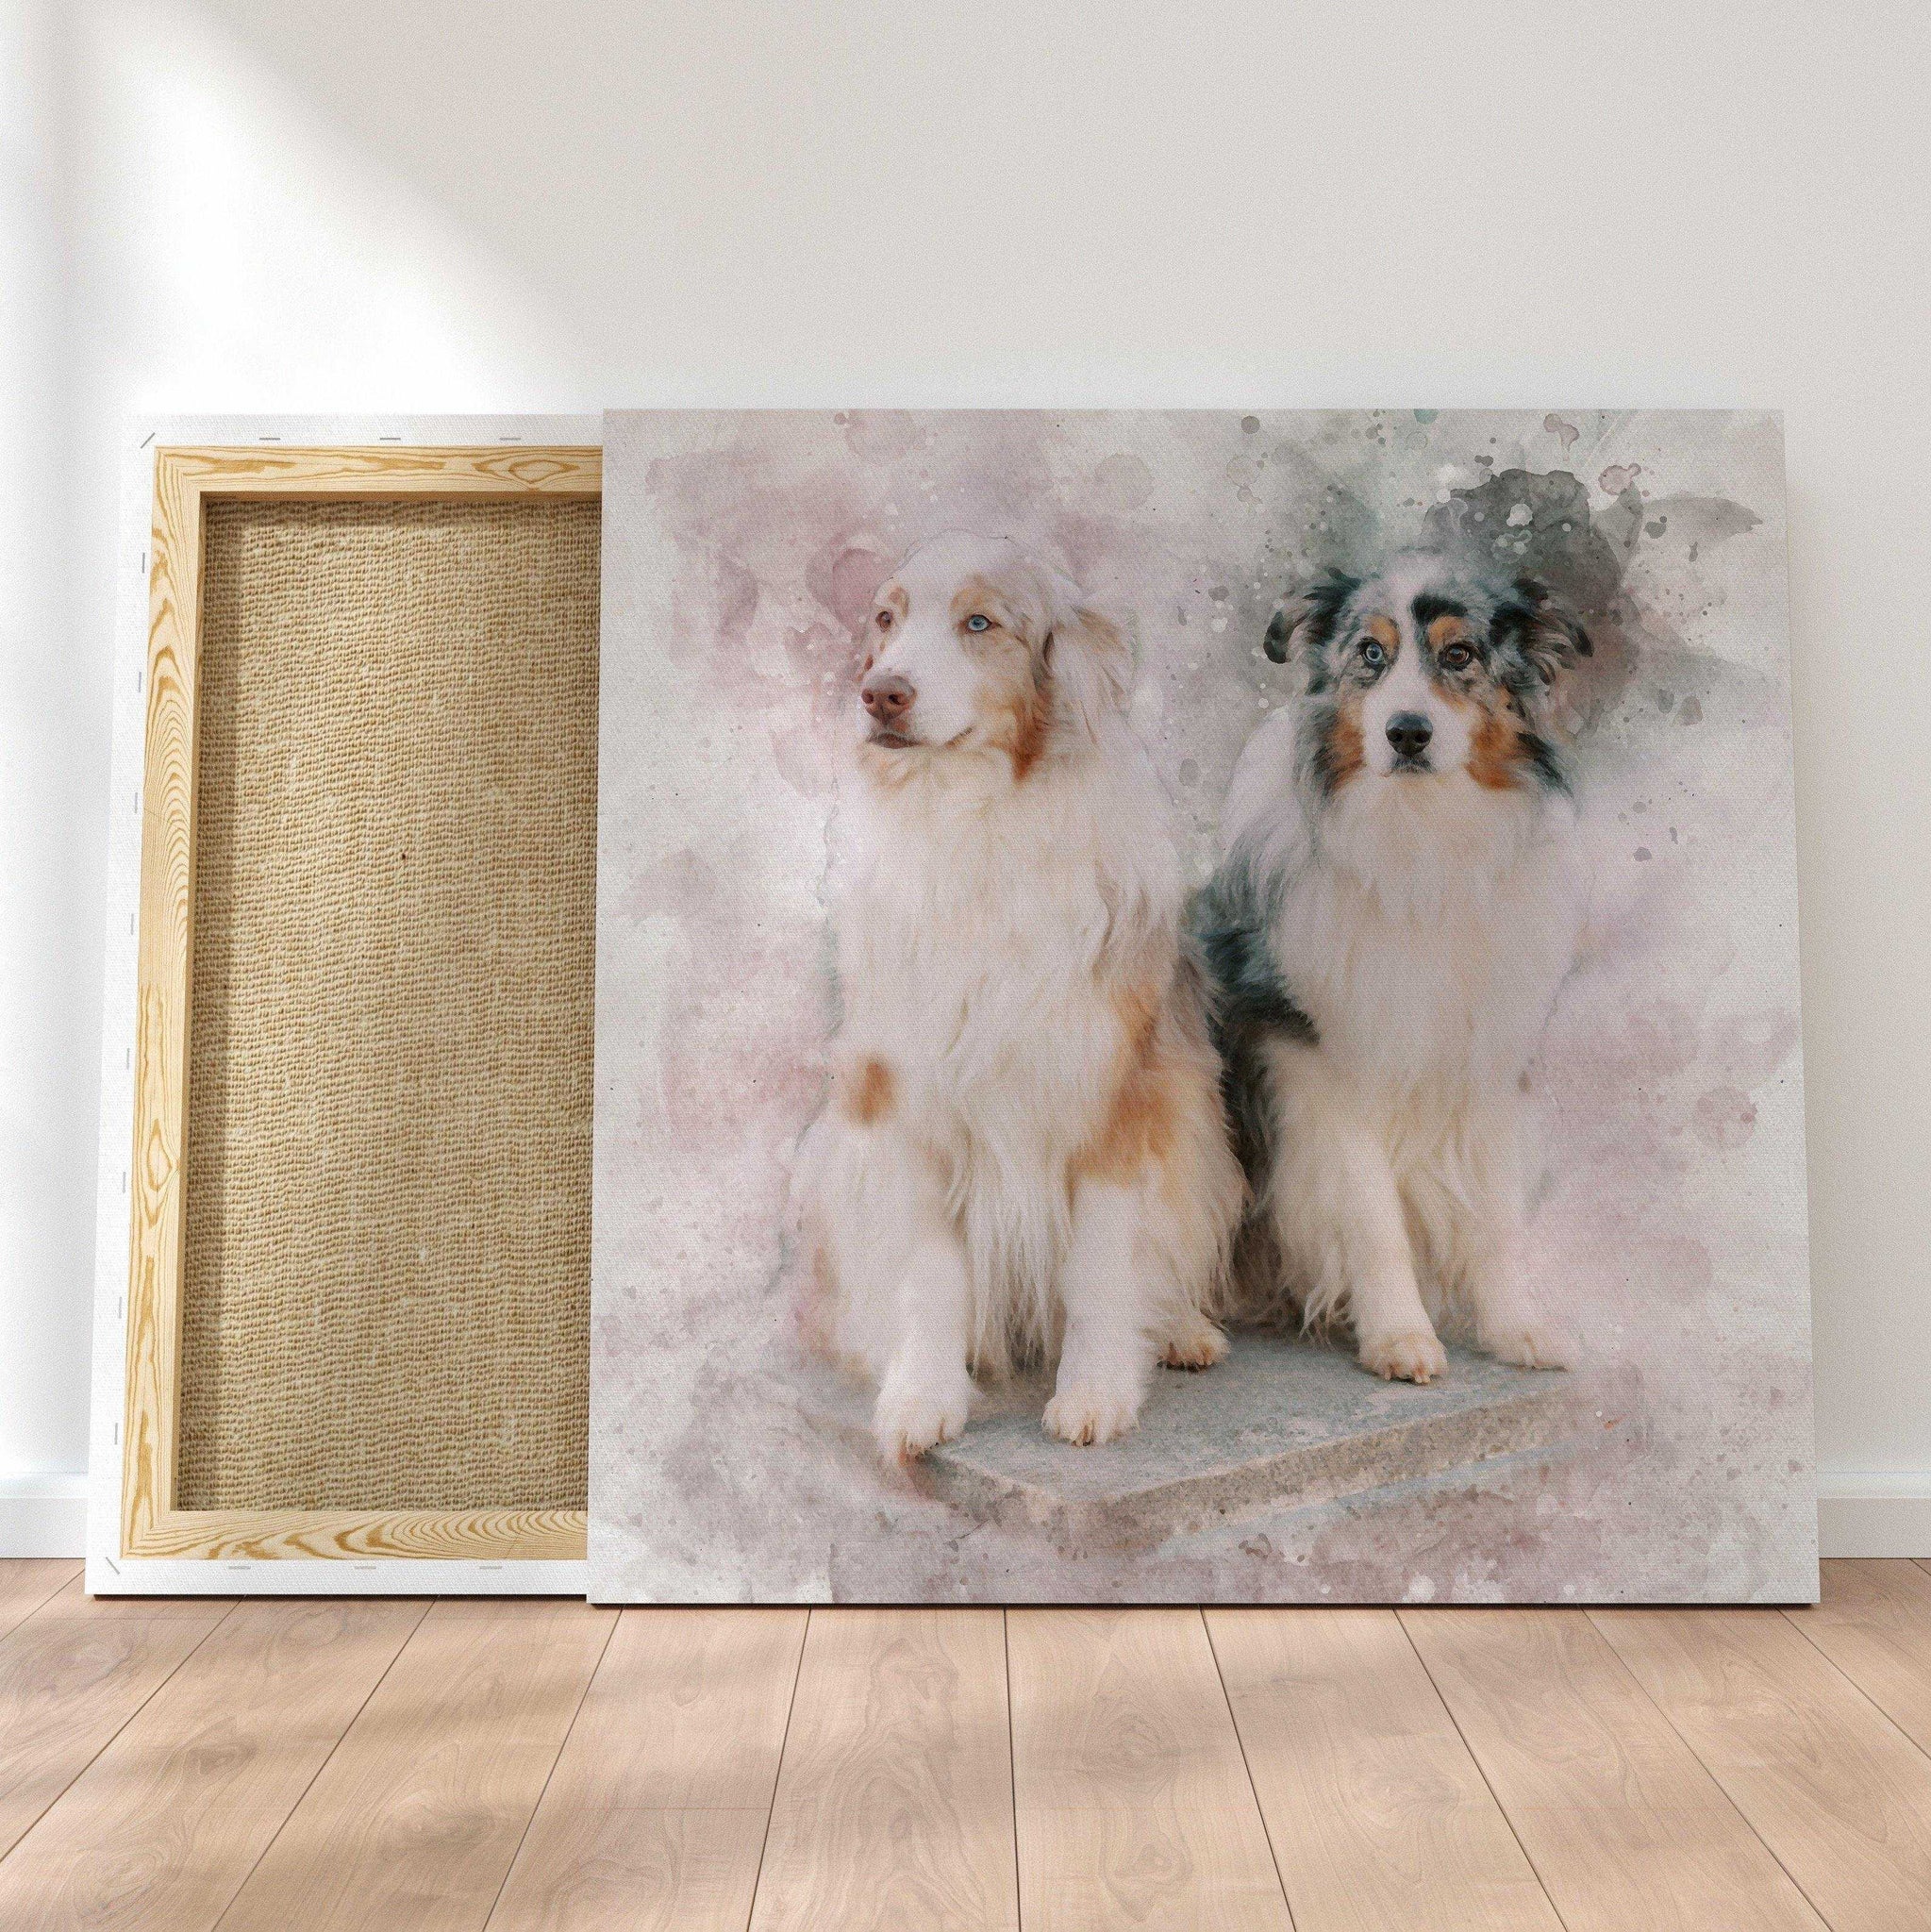 Custom Painted Dog Portraits, Personalized Dog Paintings, Dog Portrait Paintings - FromPicToArt